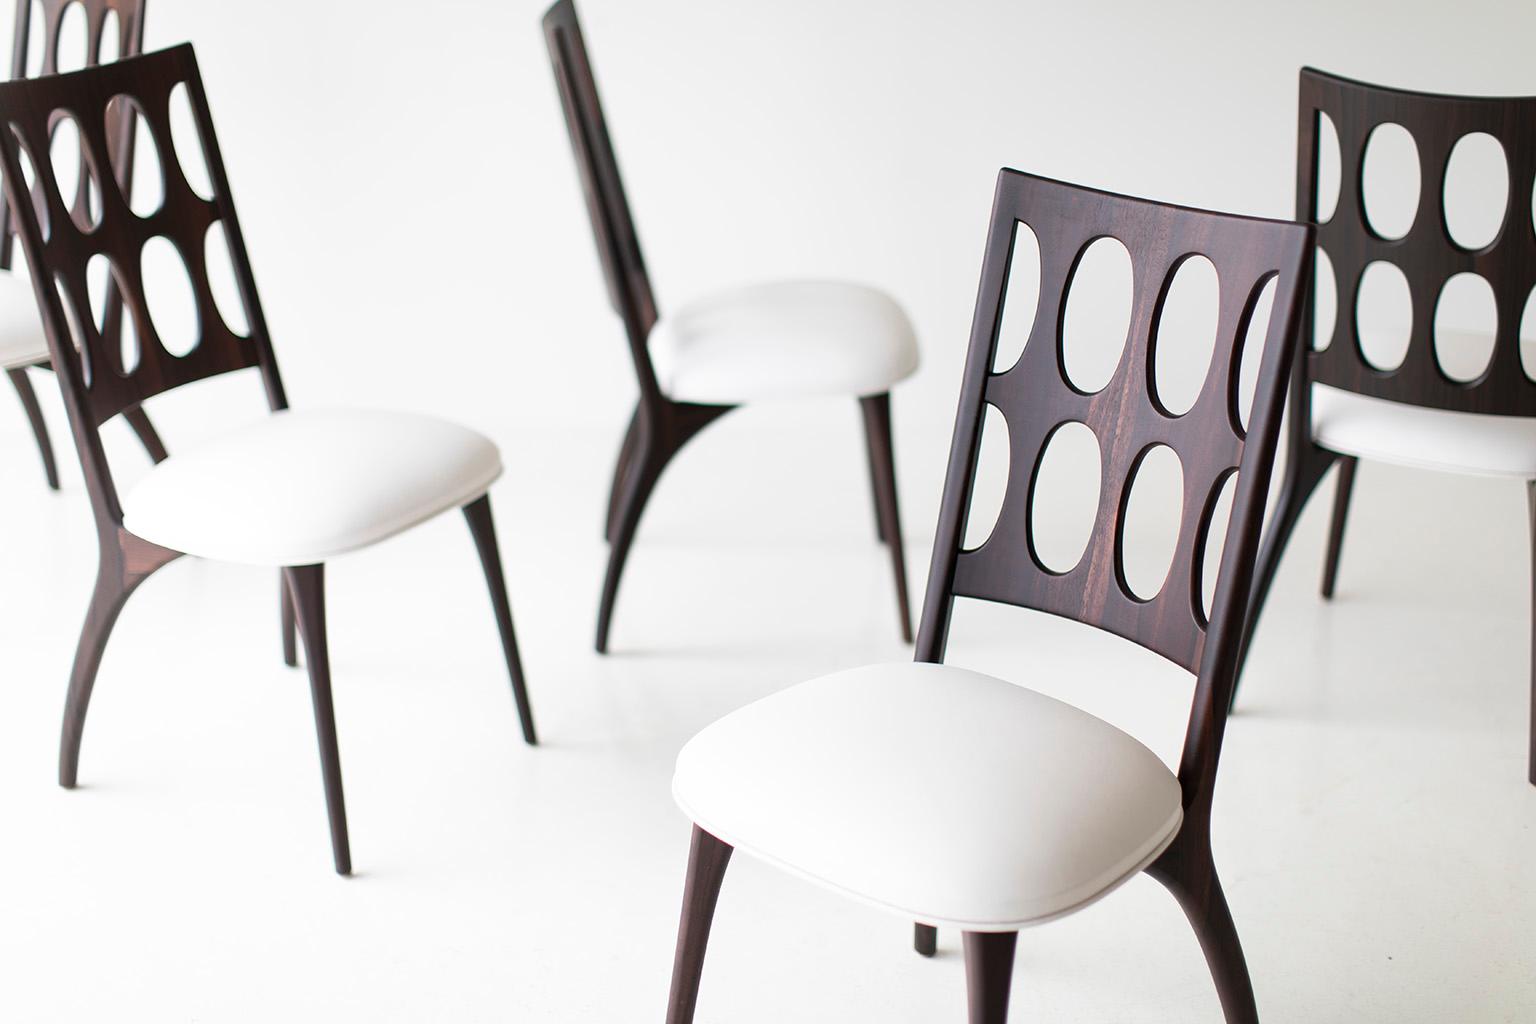 Chaises de salle à manger Craft Associates, chaises de salle à manger The Moderns Modernity en noyer, cuir

Les chaises de salle à manger modernes, 1901 pour Craft Associates Furniture, sont fabriquées à la main par des experts. Chaque pied de